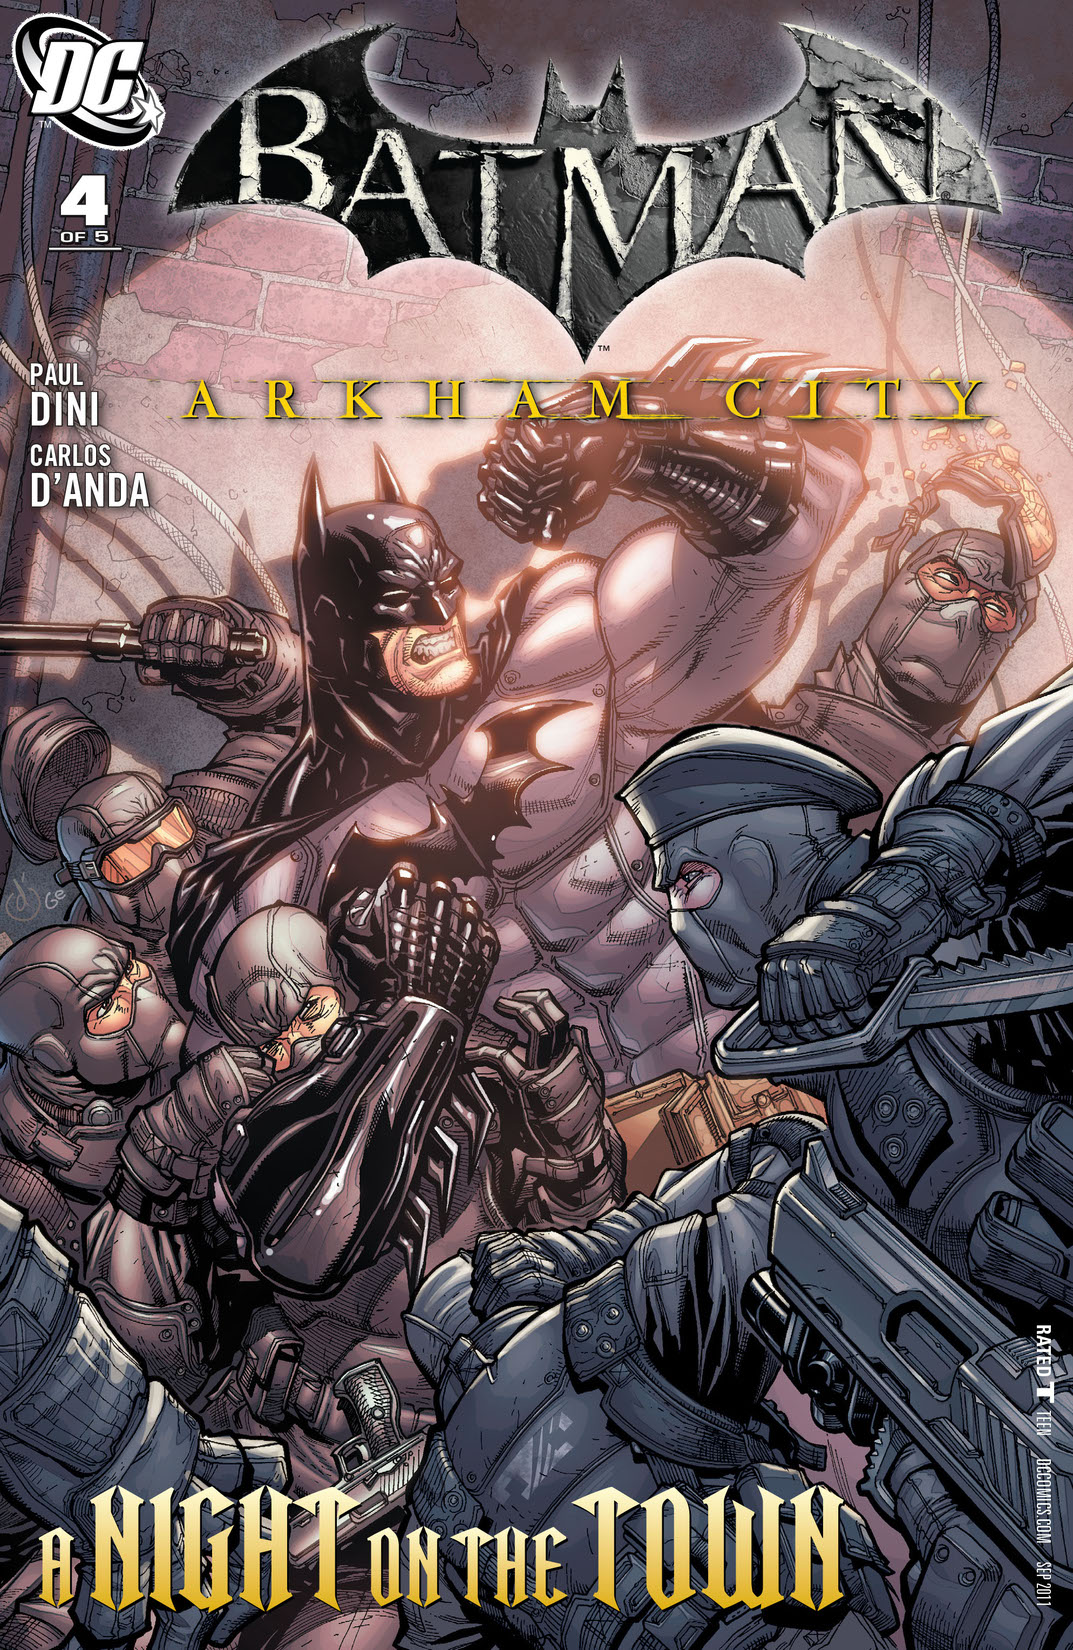 Batman: Arkham City #4 preview images